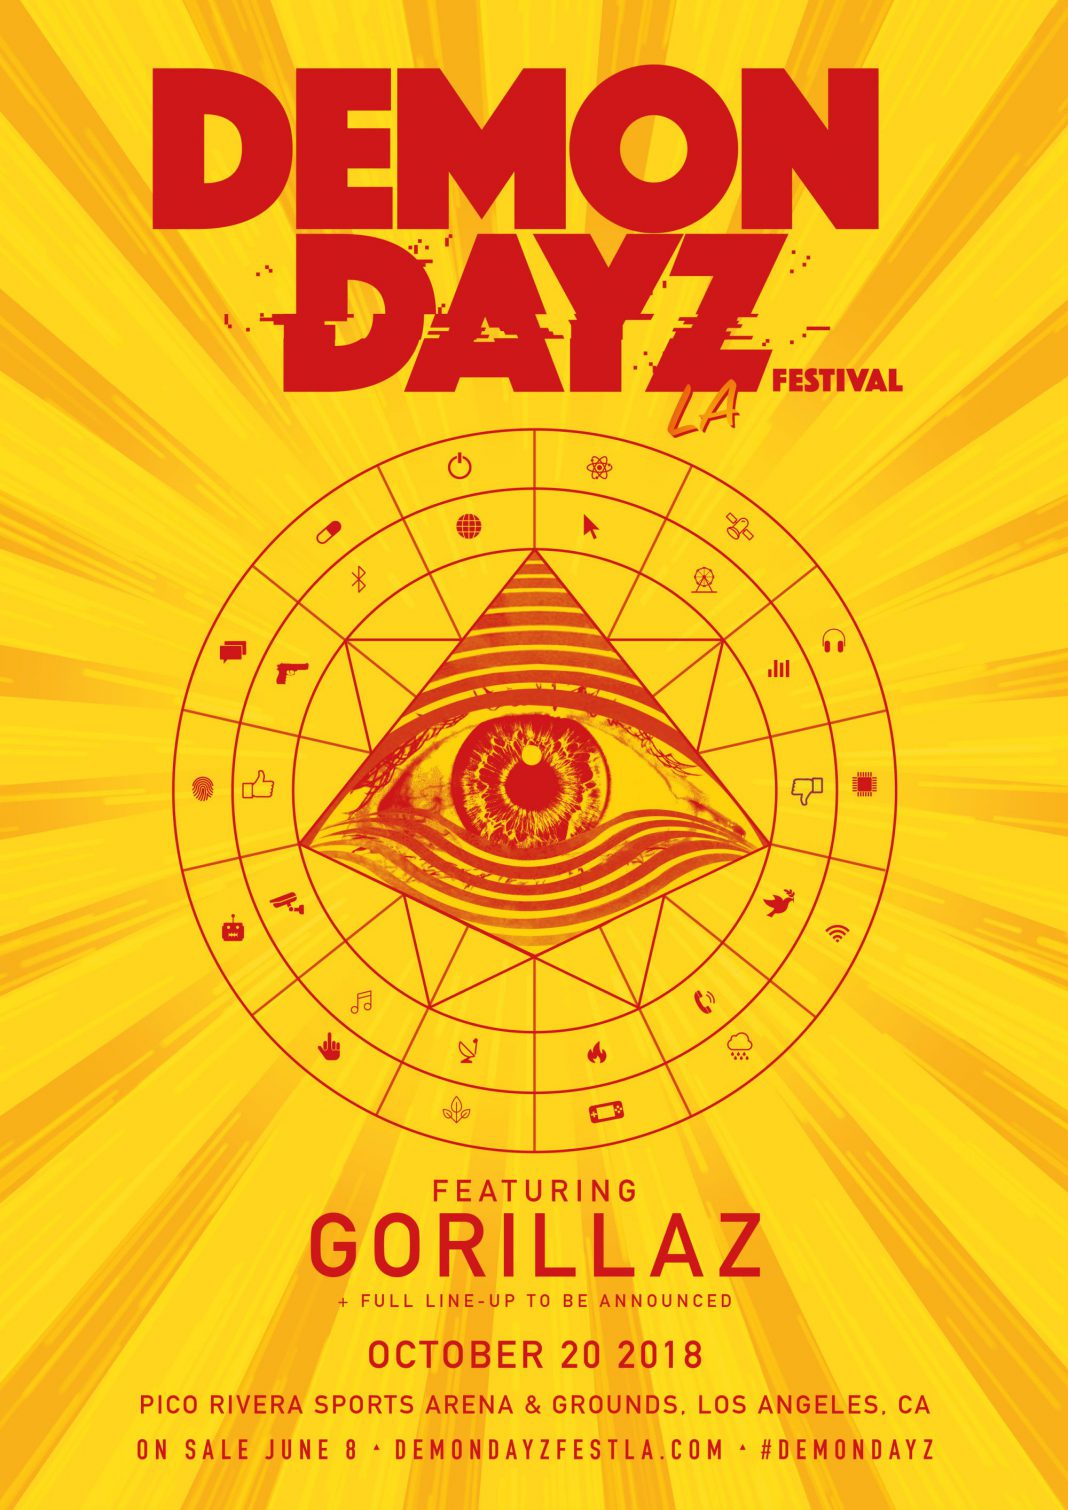 Gorillaz Announce Demon Dayz Festival LA and Release New Tune "Humility